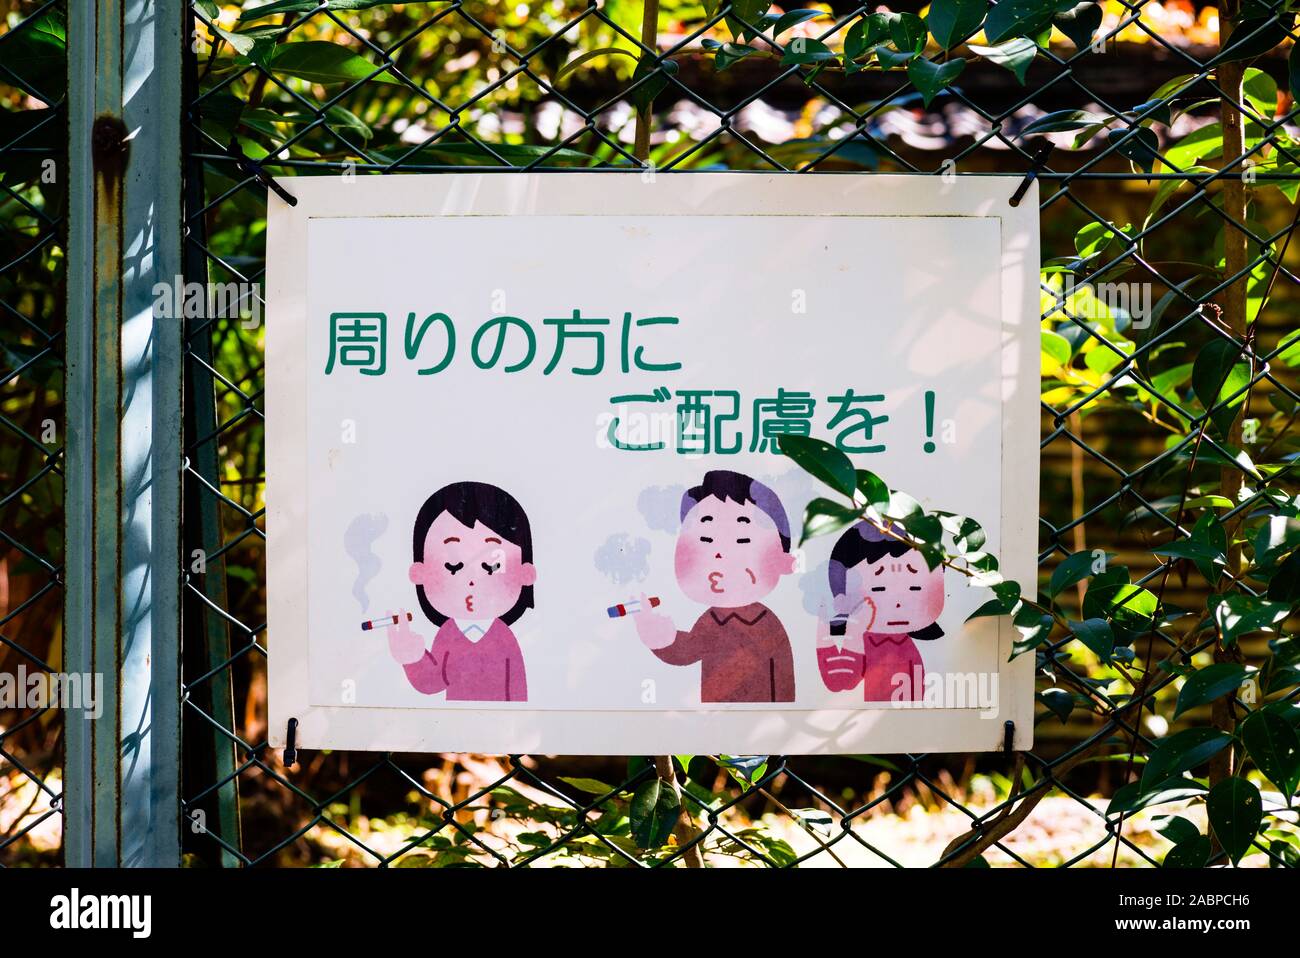 Cartello ricordando i fumatori rispetto ai non fumatori. Tokyo, Giappone, Novembre 2019 Foto Stock